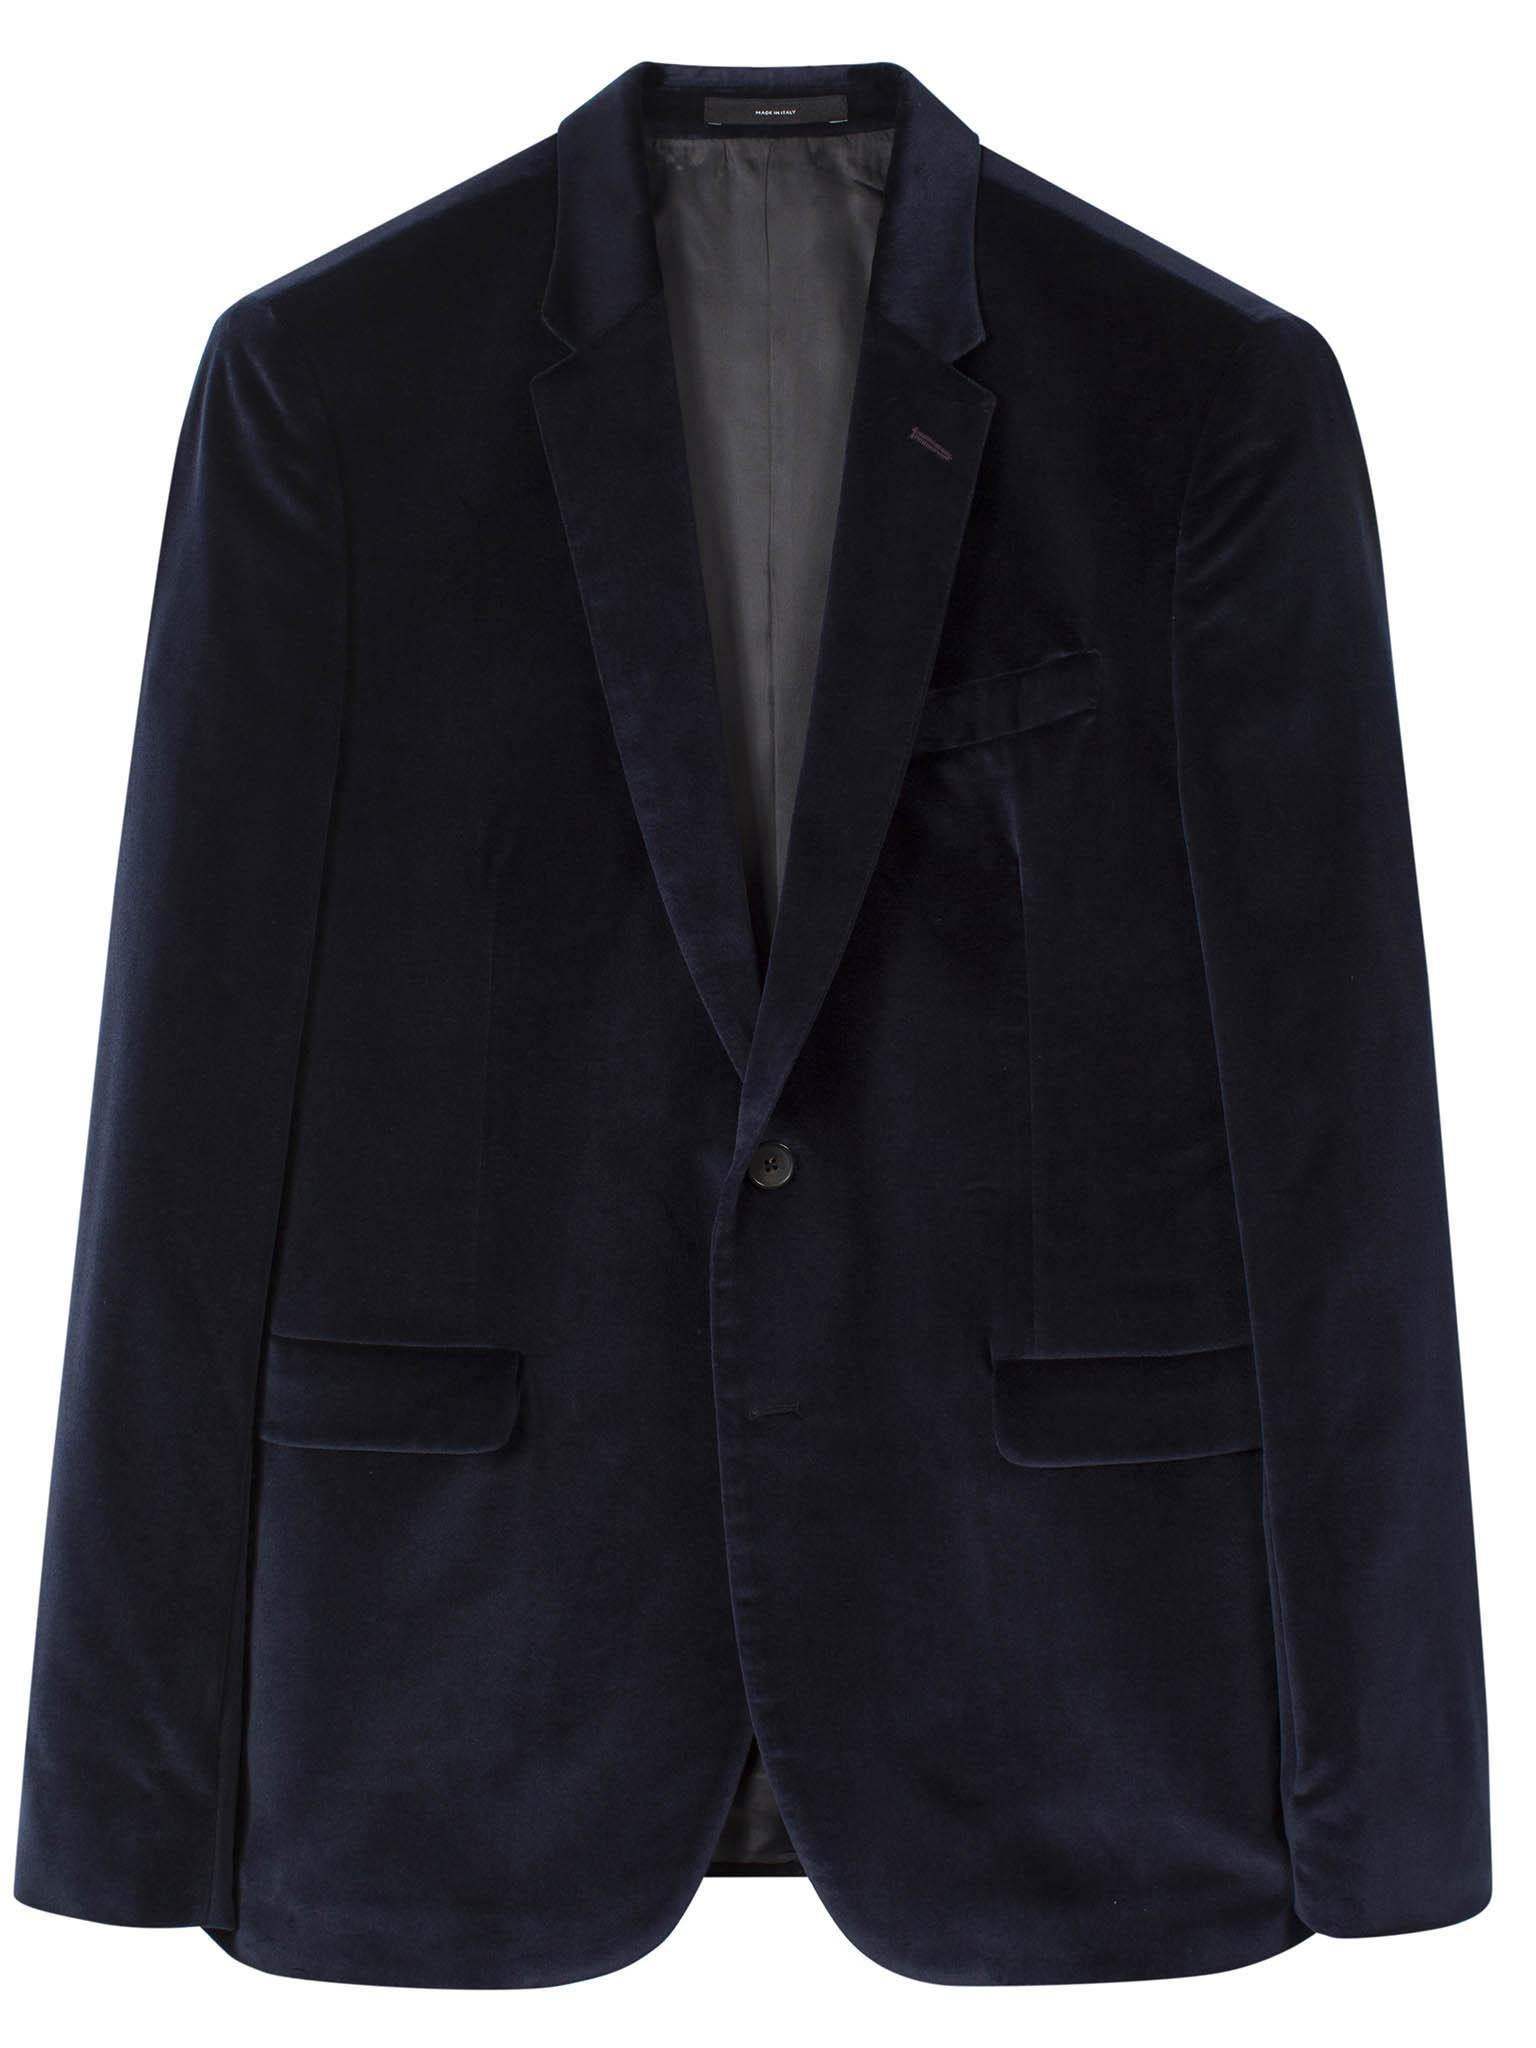 Paul Smith slim-fit navy velvet blazer, £545, paulsmith.co.uk